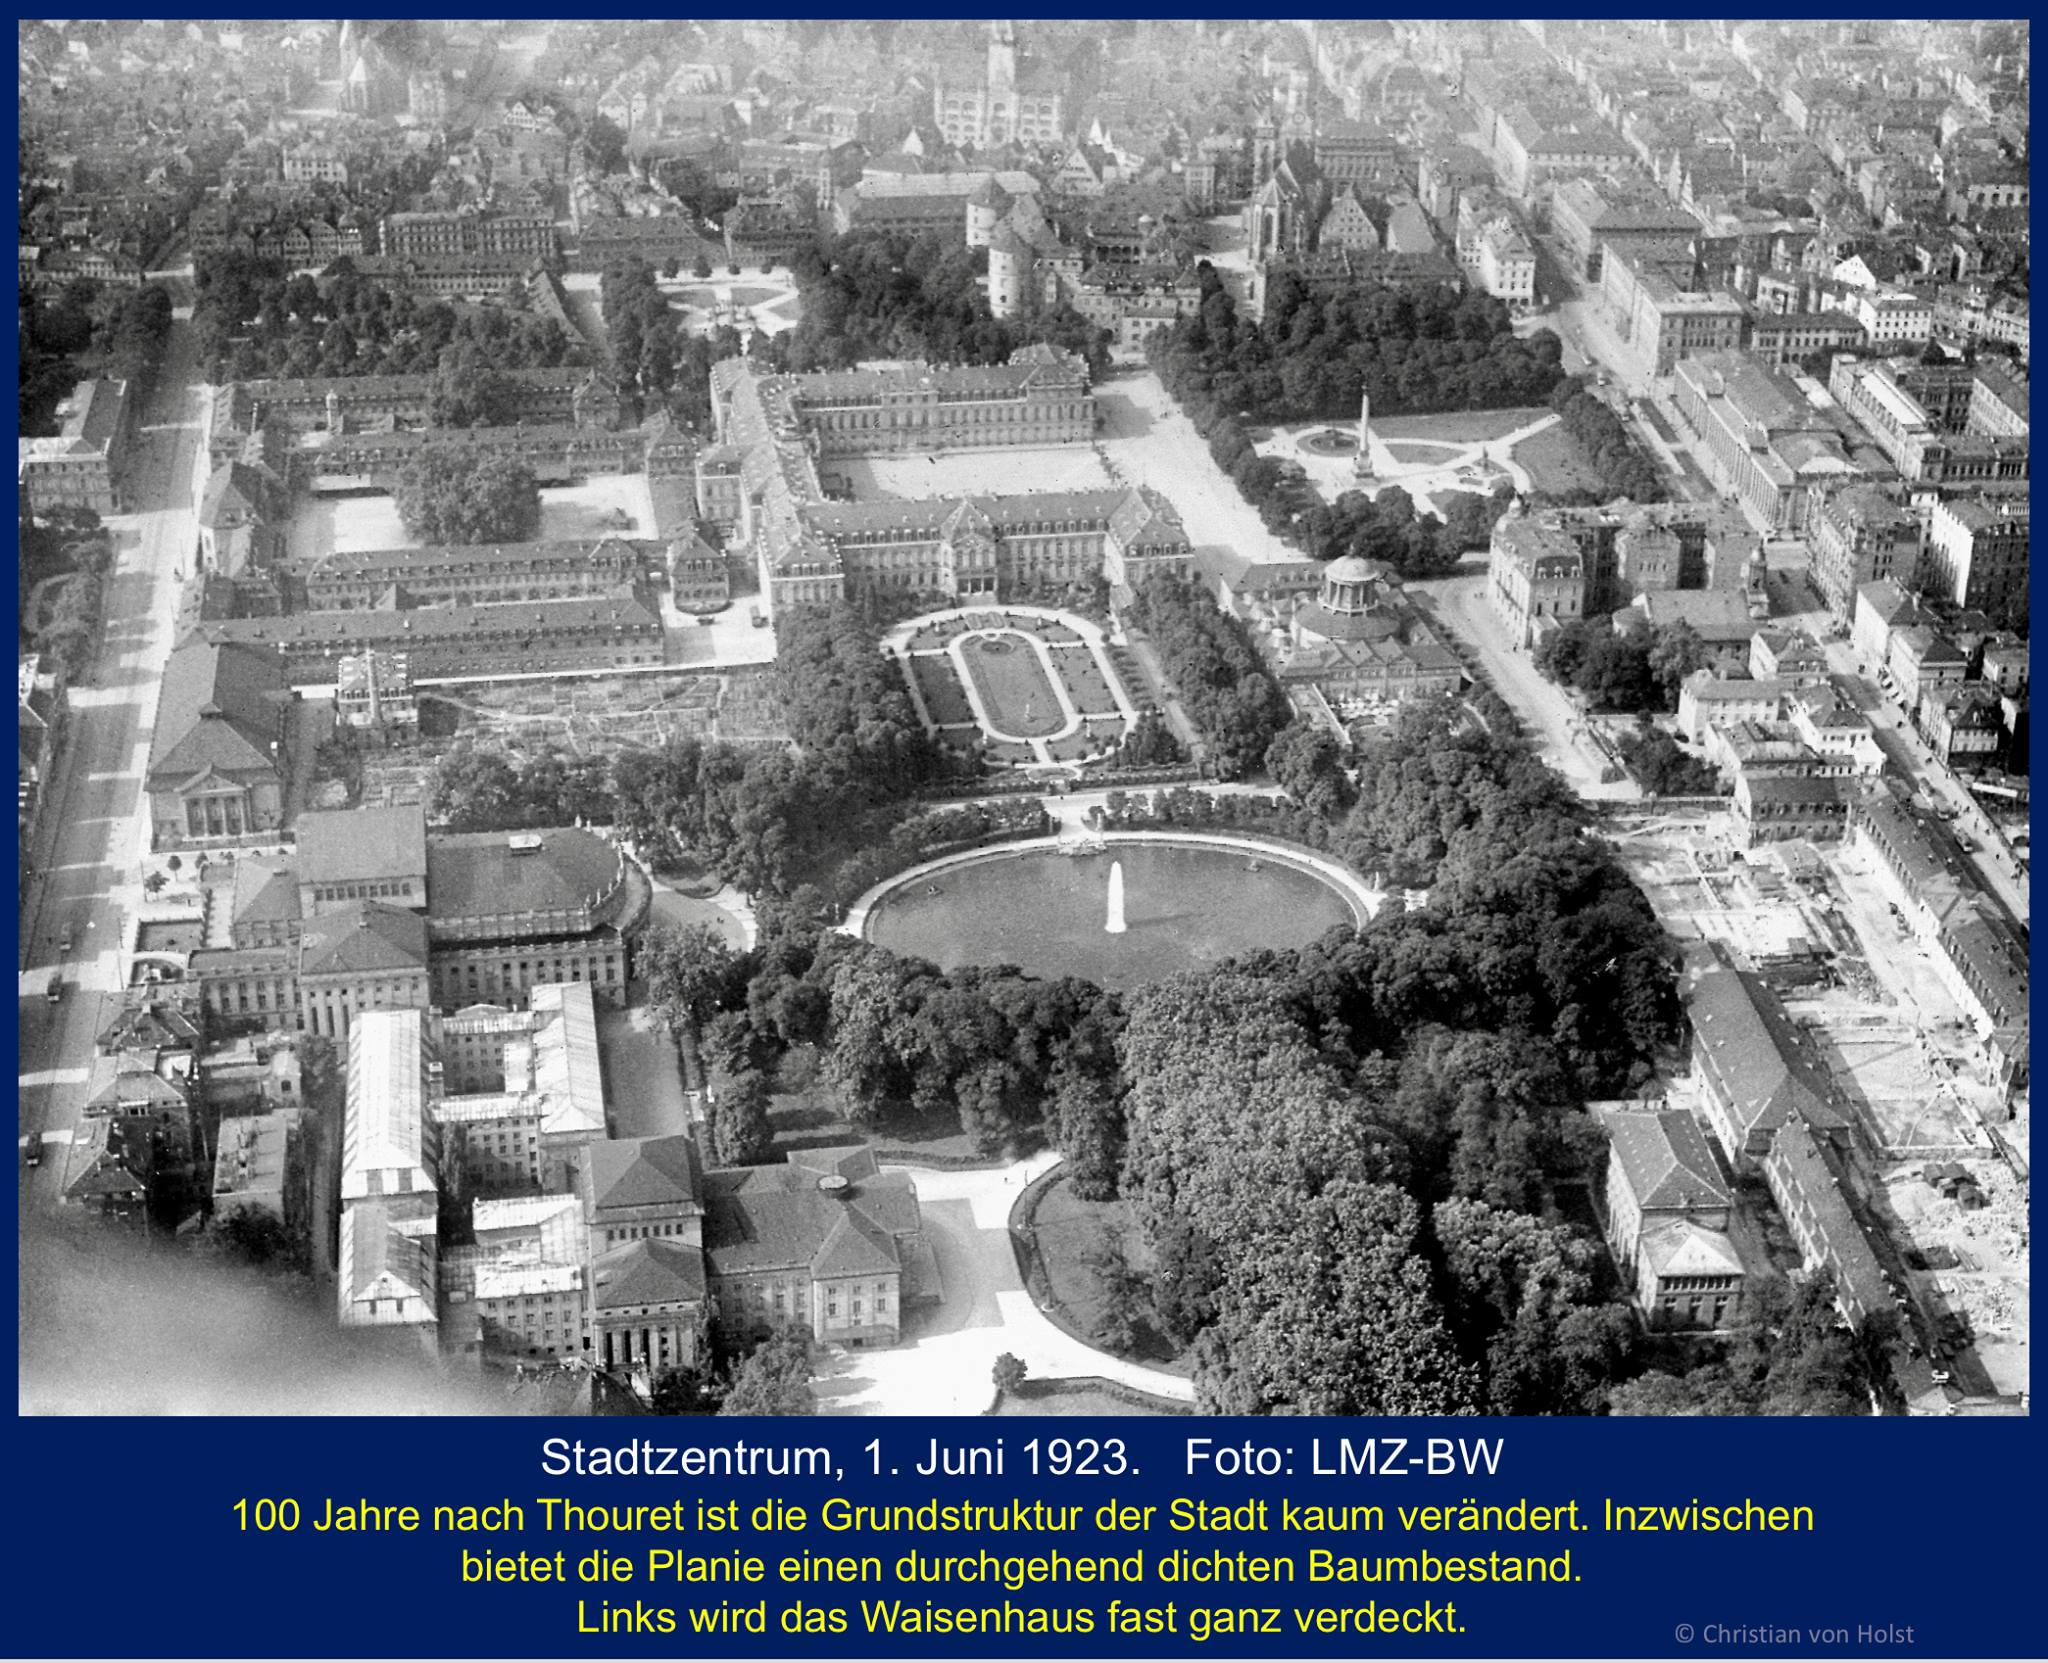 Planie — Scharnier zwischen Schlossareal und Stadtkern, Luftbild 1923